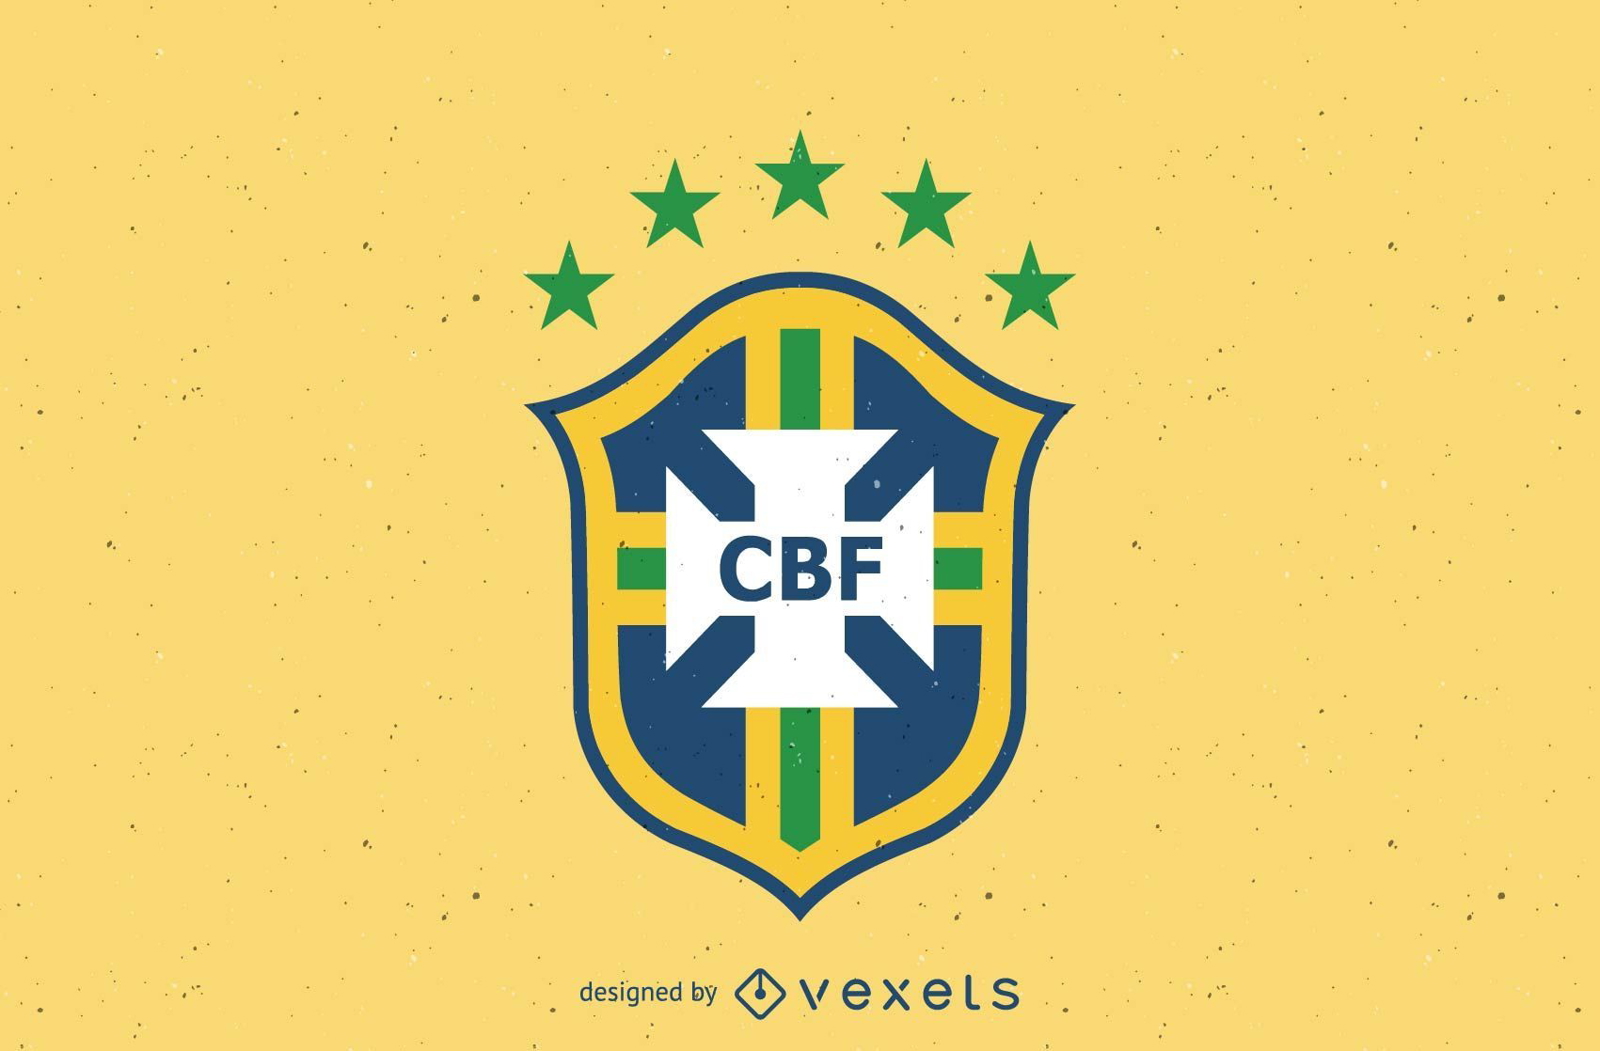 Logotipo da confedera??o brasileira de futebol